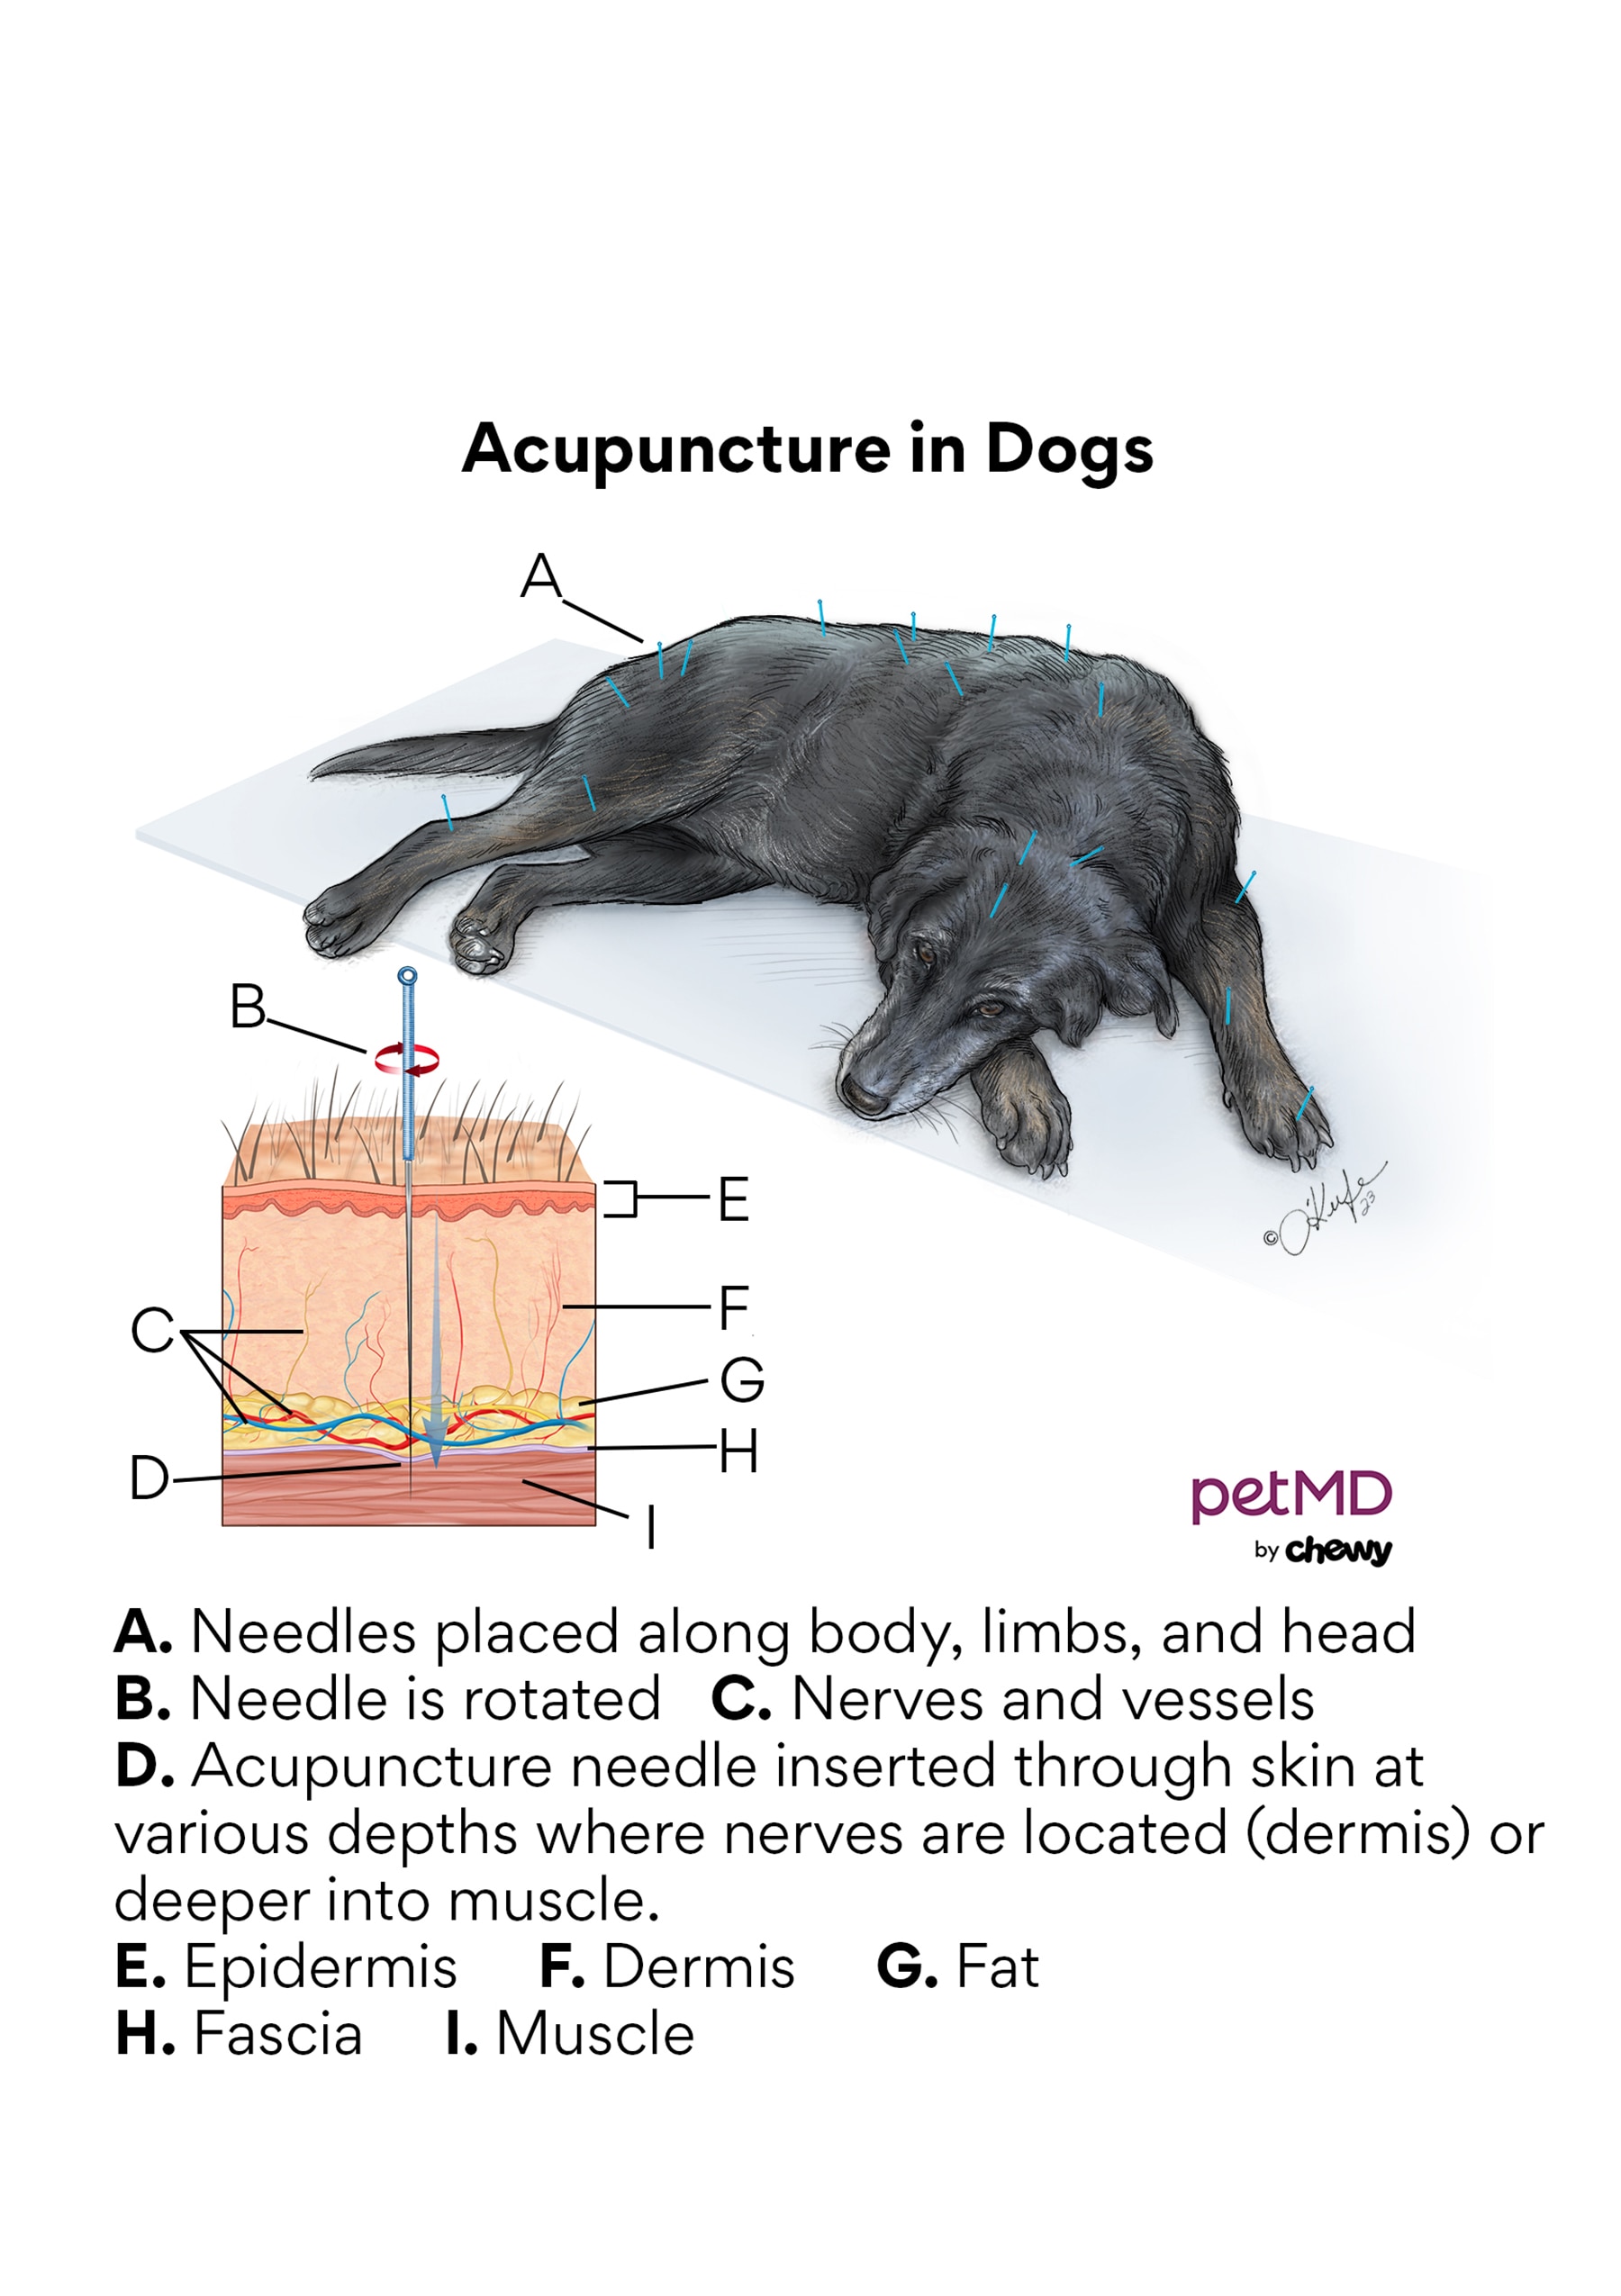 Dog acupuncture diagram